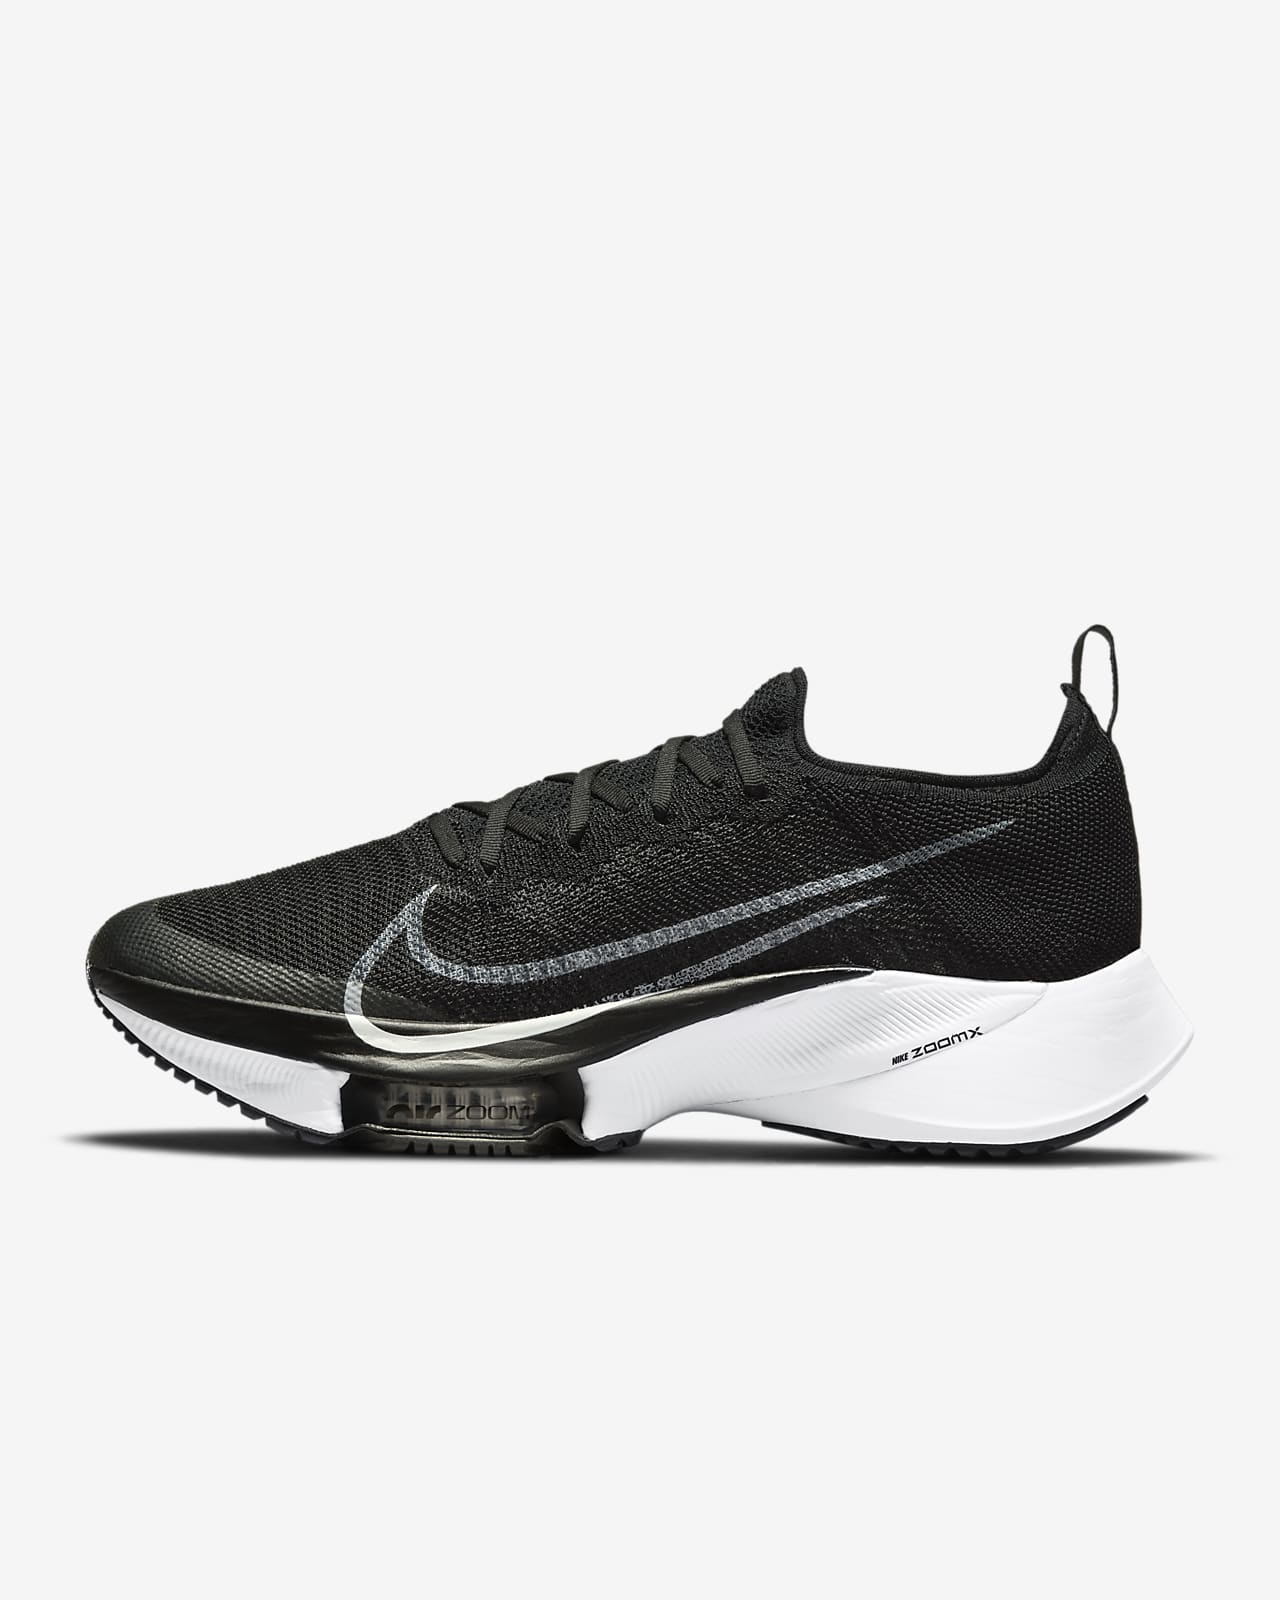 Nike Air Zoom Tempo NEXT% Zapatillas de running para asfalto - Hombre